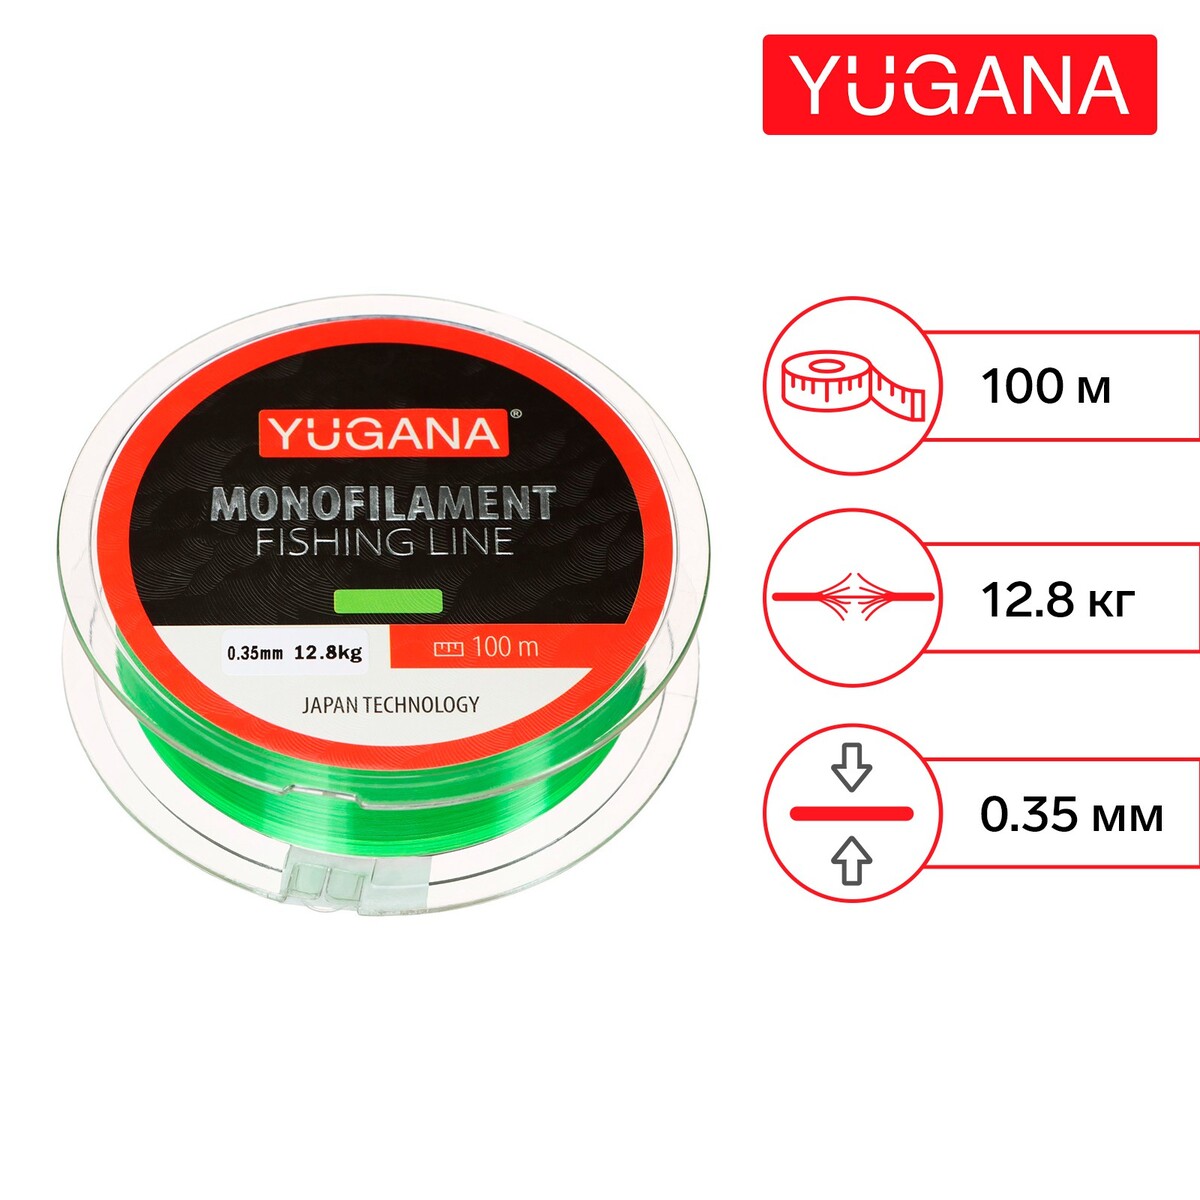 Леска монофильная yugana, диаметр 0.35 мм, тест 12.8 кг, 100 м, зеленая